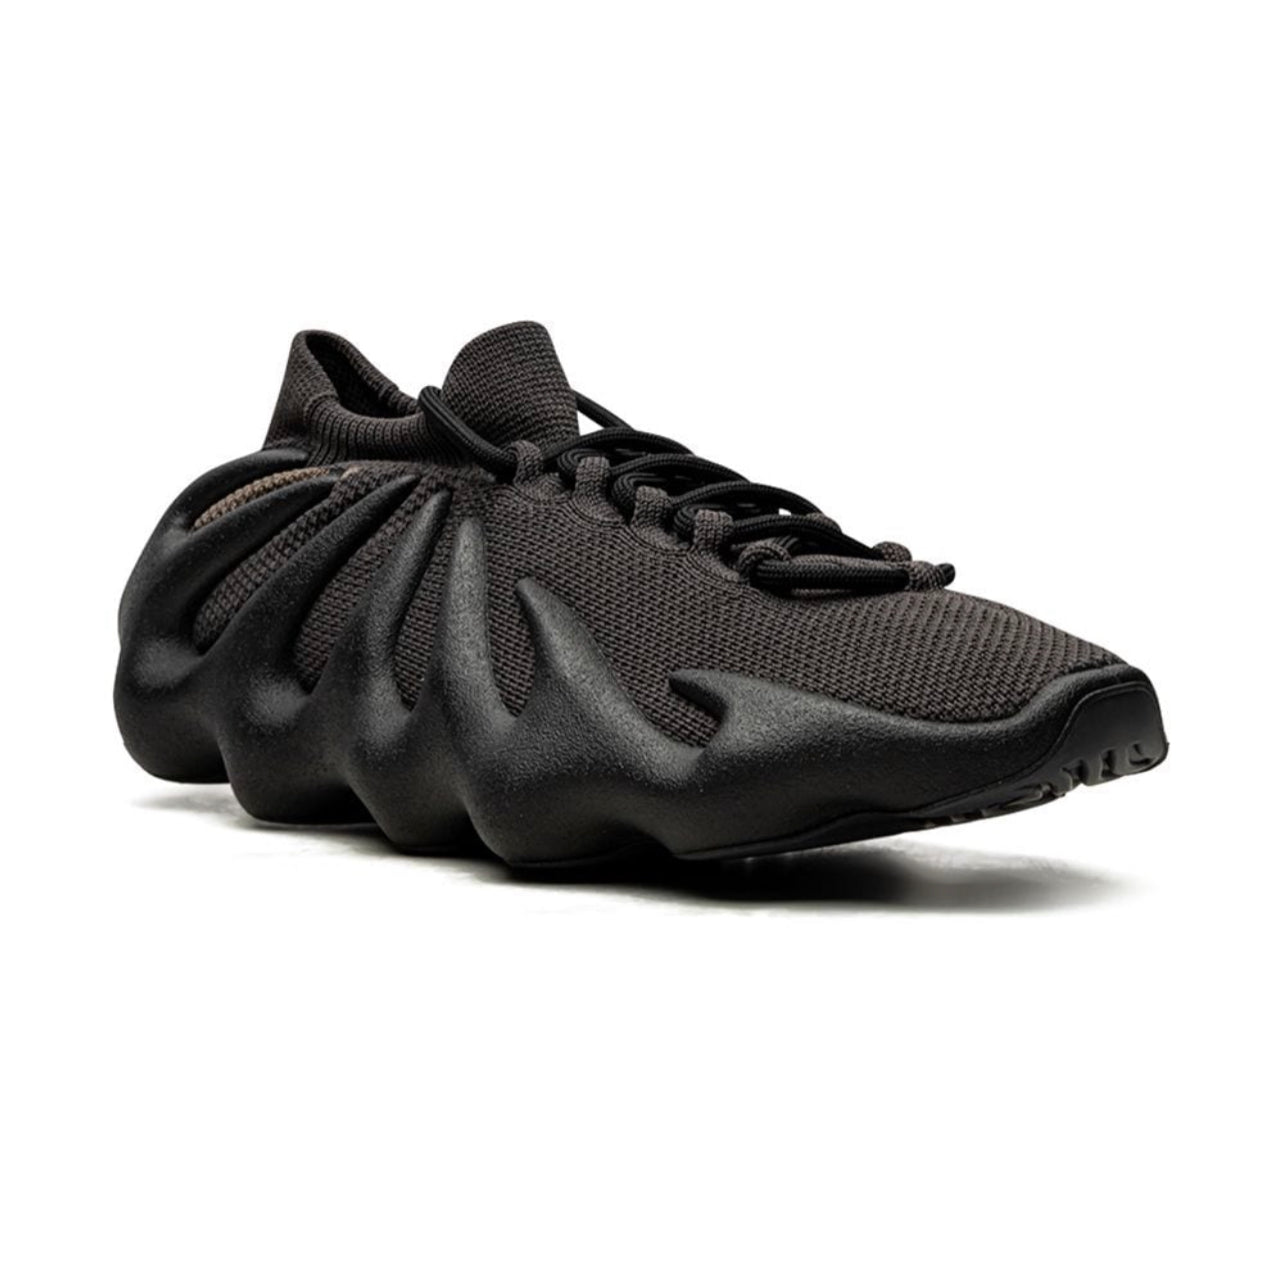 Adidas Yeezy YEEZY 450 "Dark Slate" sneakers